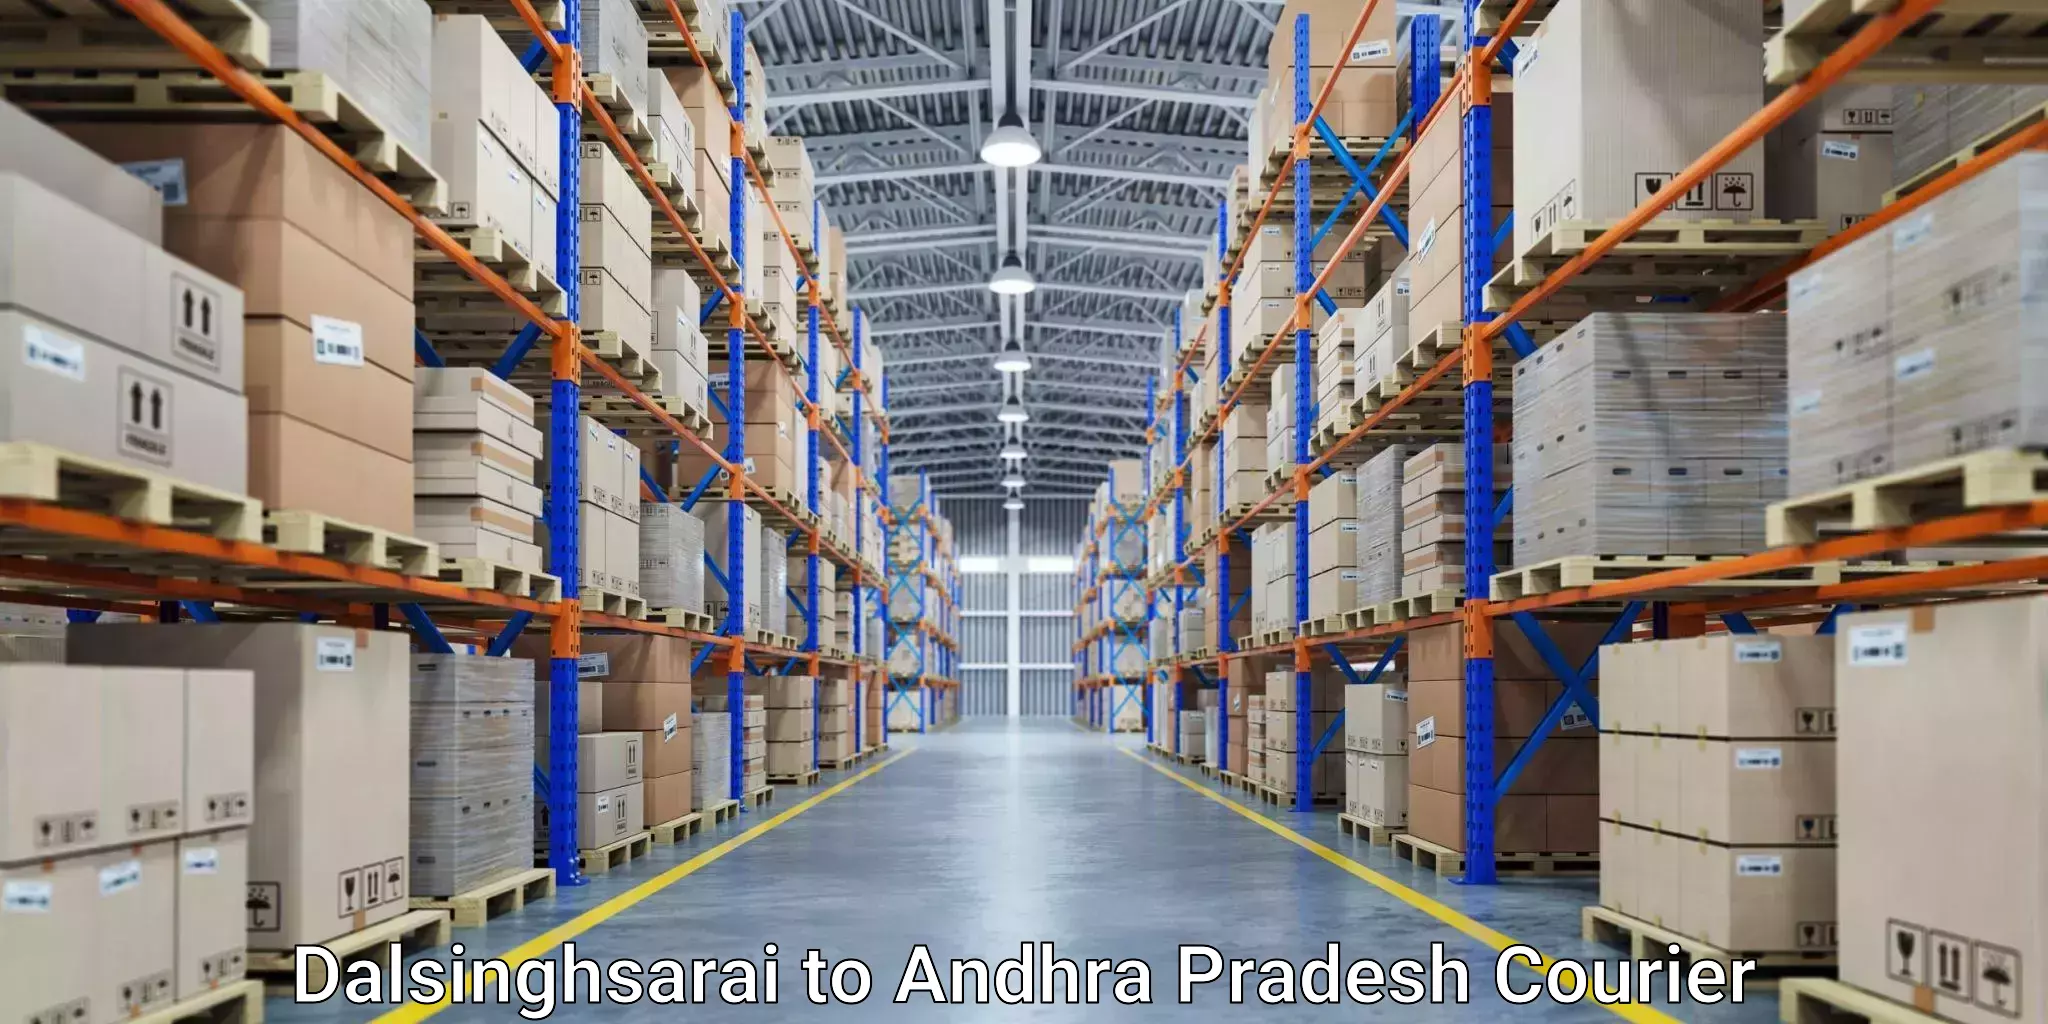 24/7 courier service Dalsinghsarai to Andhra Pradesh